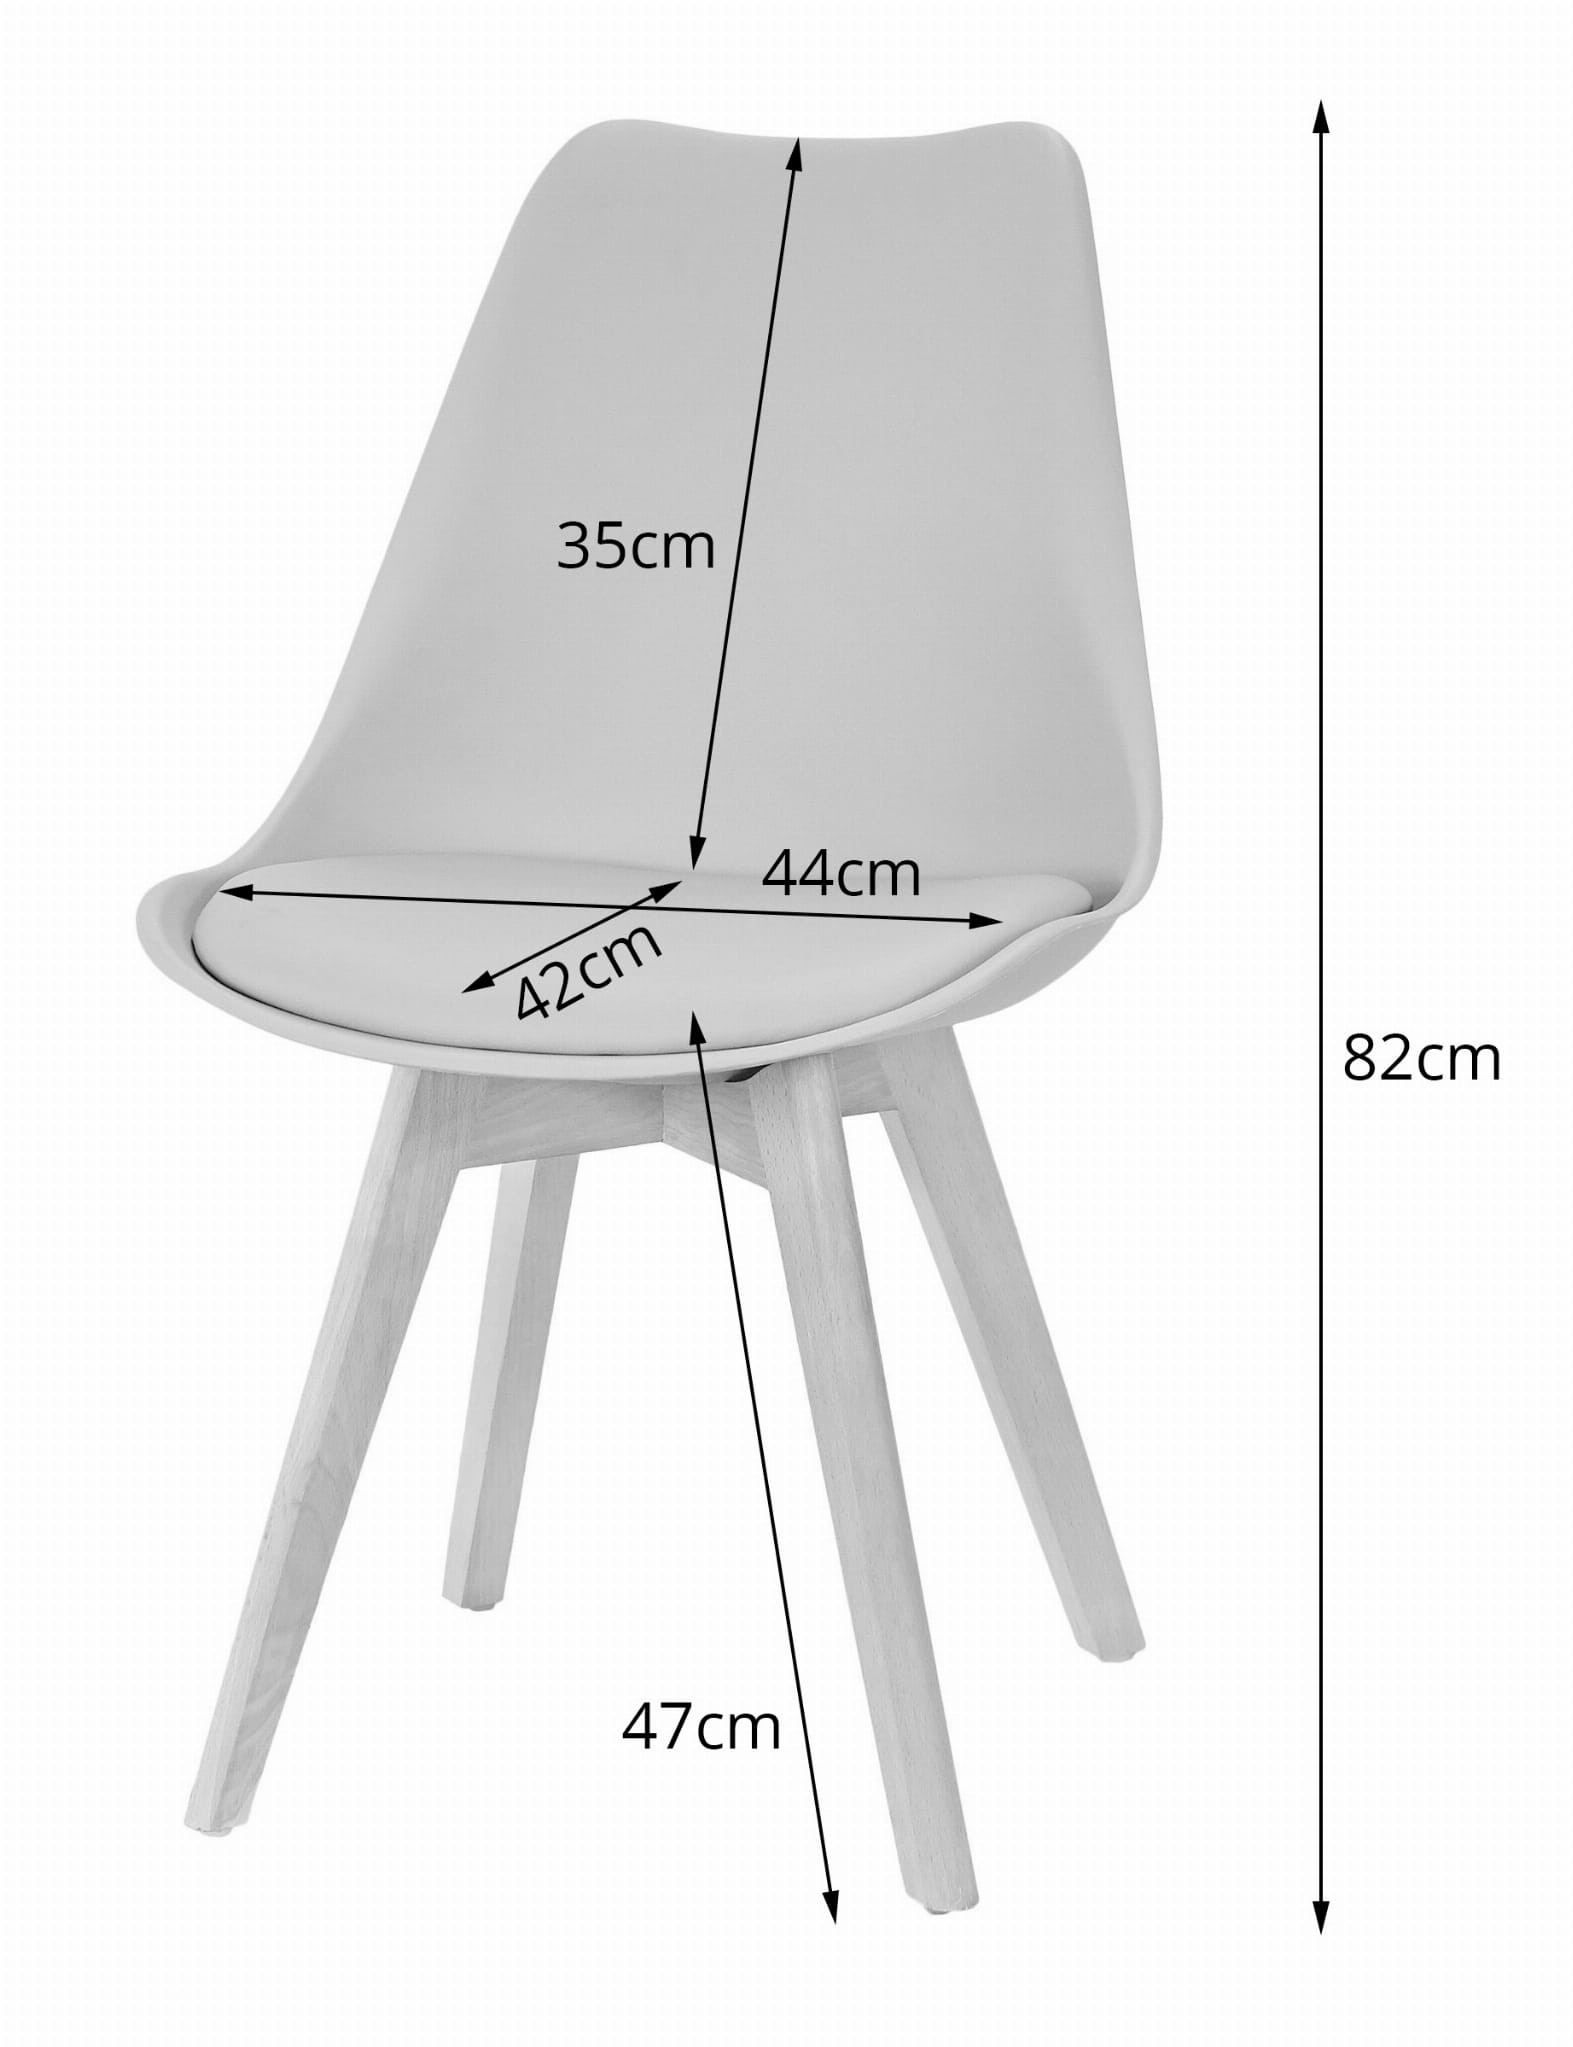 Jedálenská stolička MARK - sivá (hnedé nohy)